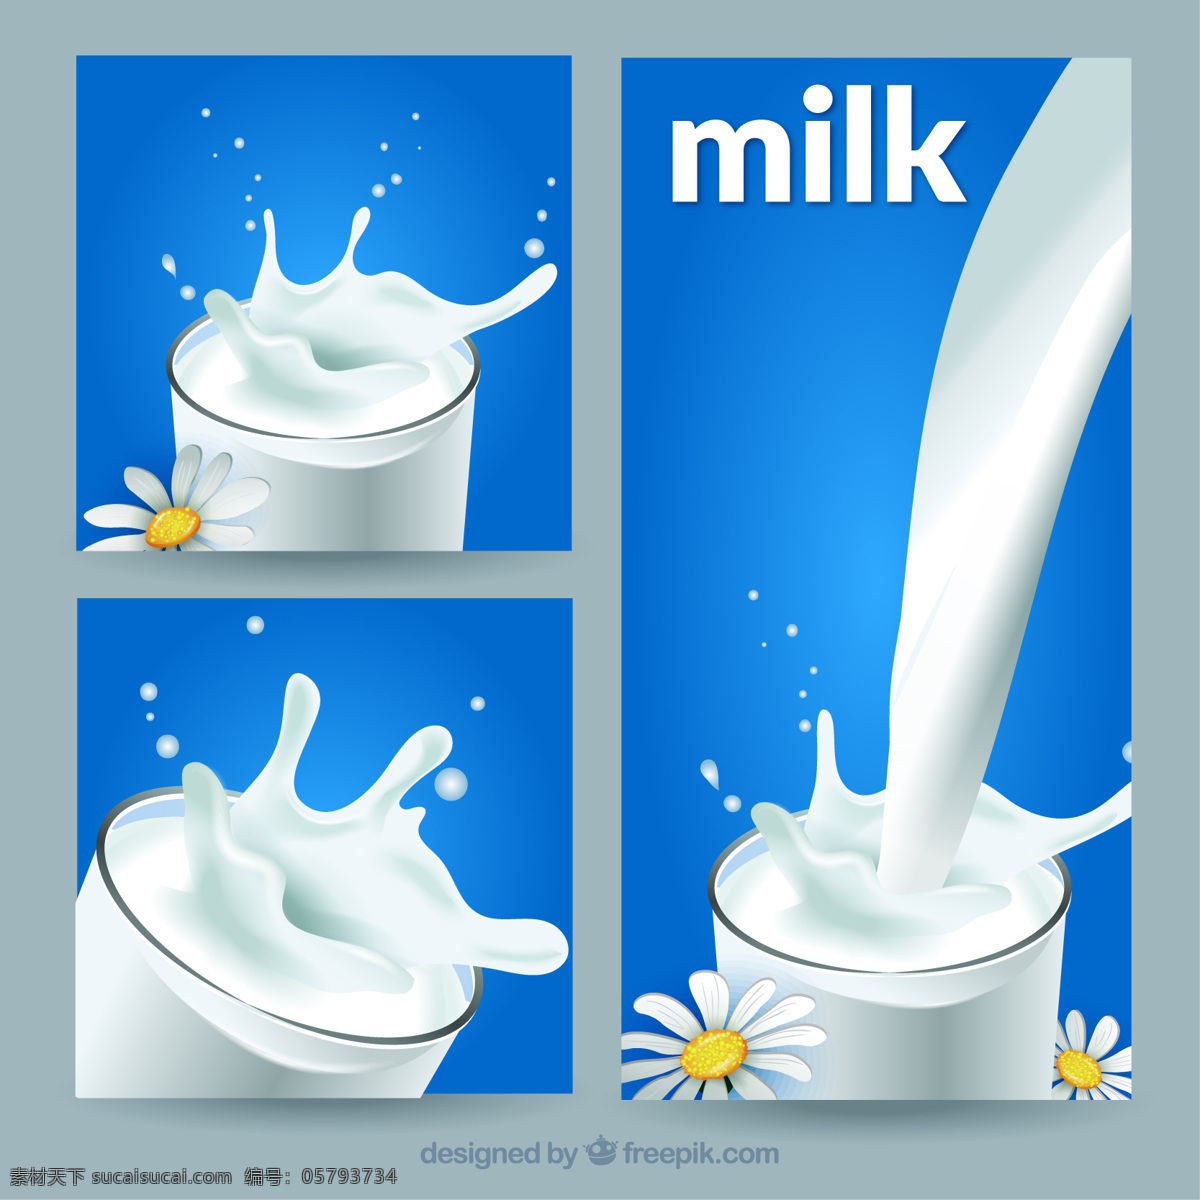 倒牛奶的旗帜 旗帜 飞溅 健康 横幅 牛奶 饮料 天然 新鲜 液体饮料 流淌 倒 乳 蓝色